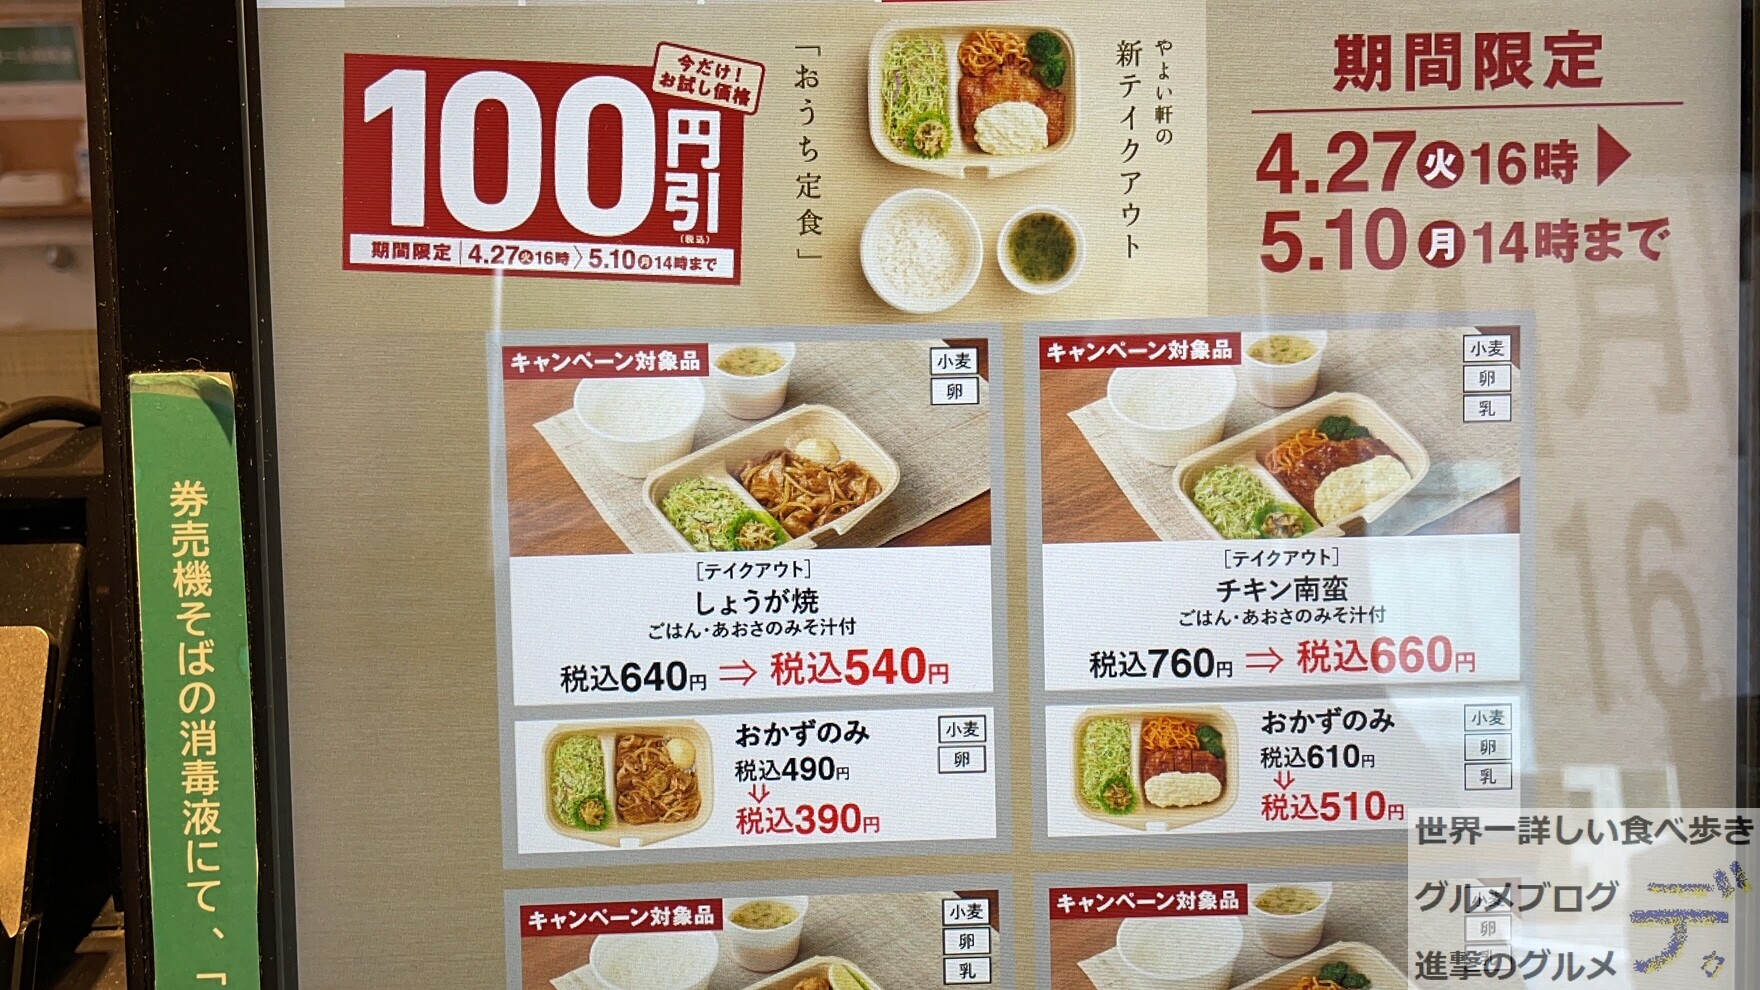 ごはん超特盛無料 やよい軒の新テイクアウト おうち定食 を買ってみた 進撃のグルメ Yahoo Japan クリエイターズプログラム